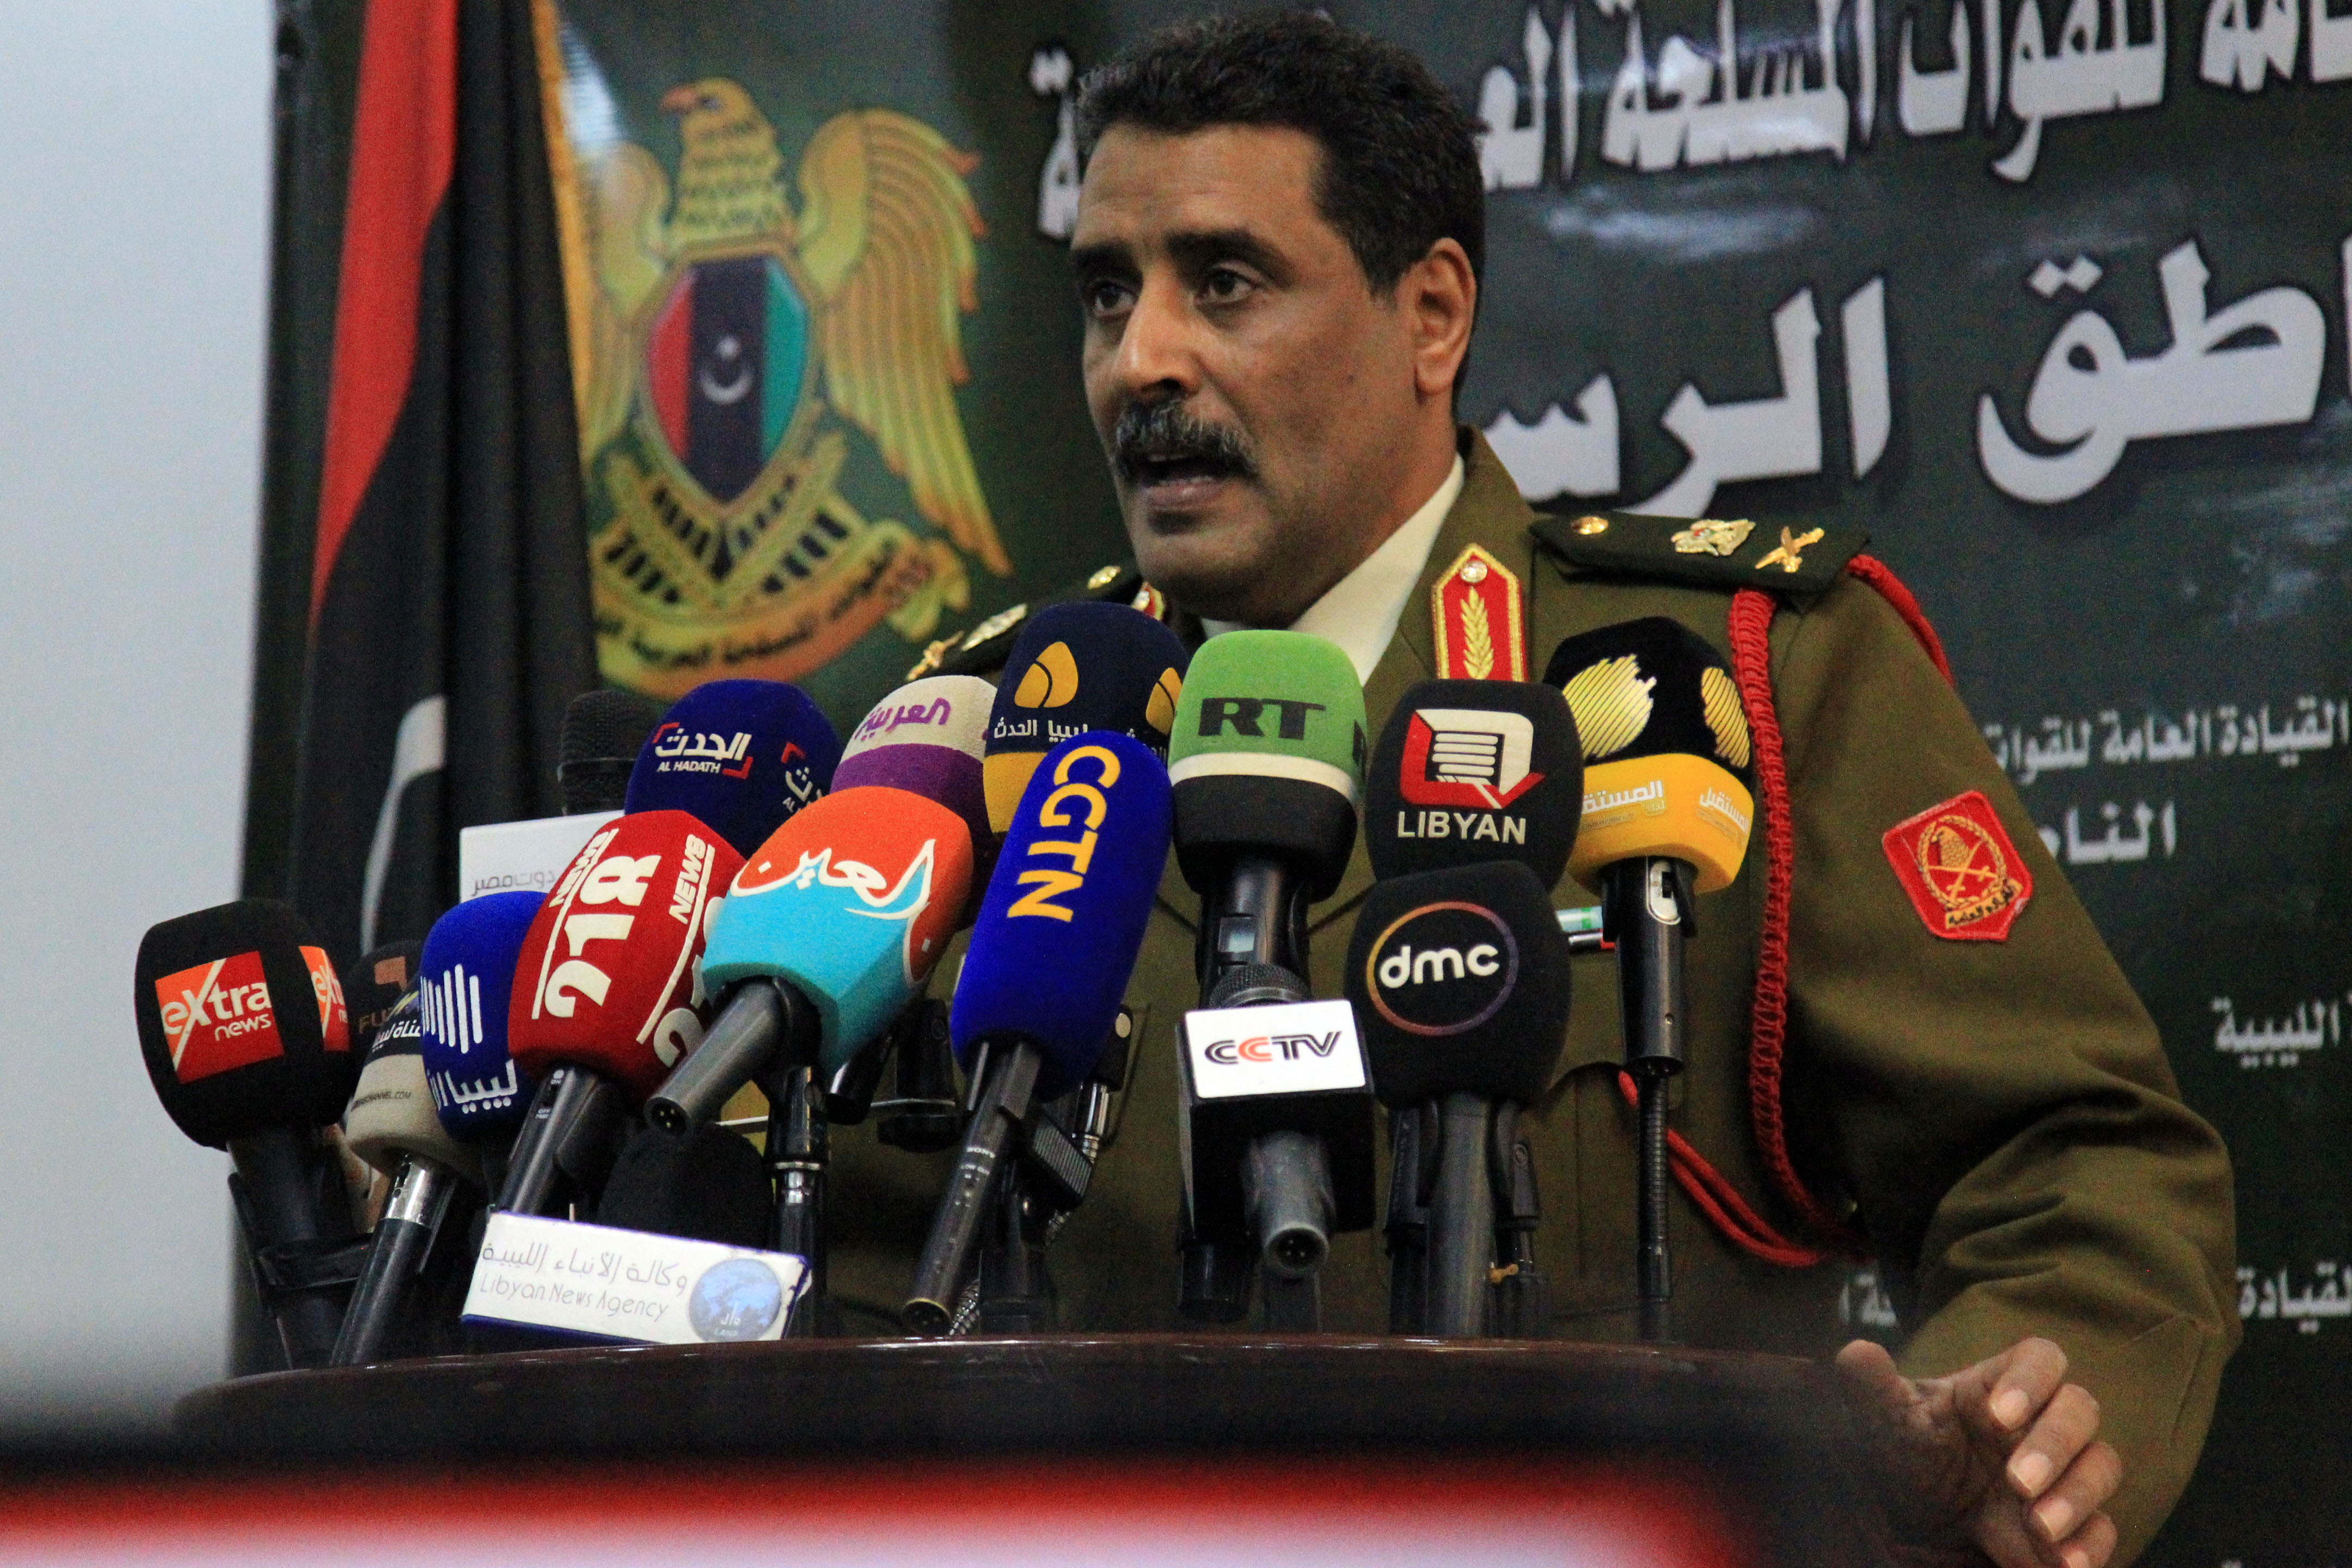 Ahmad al-Meszmari, Haftar hadseregének szóvivője bejelenti, hogy elfoglalták Szurt városát.